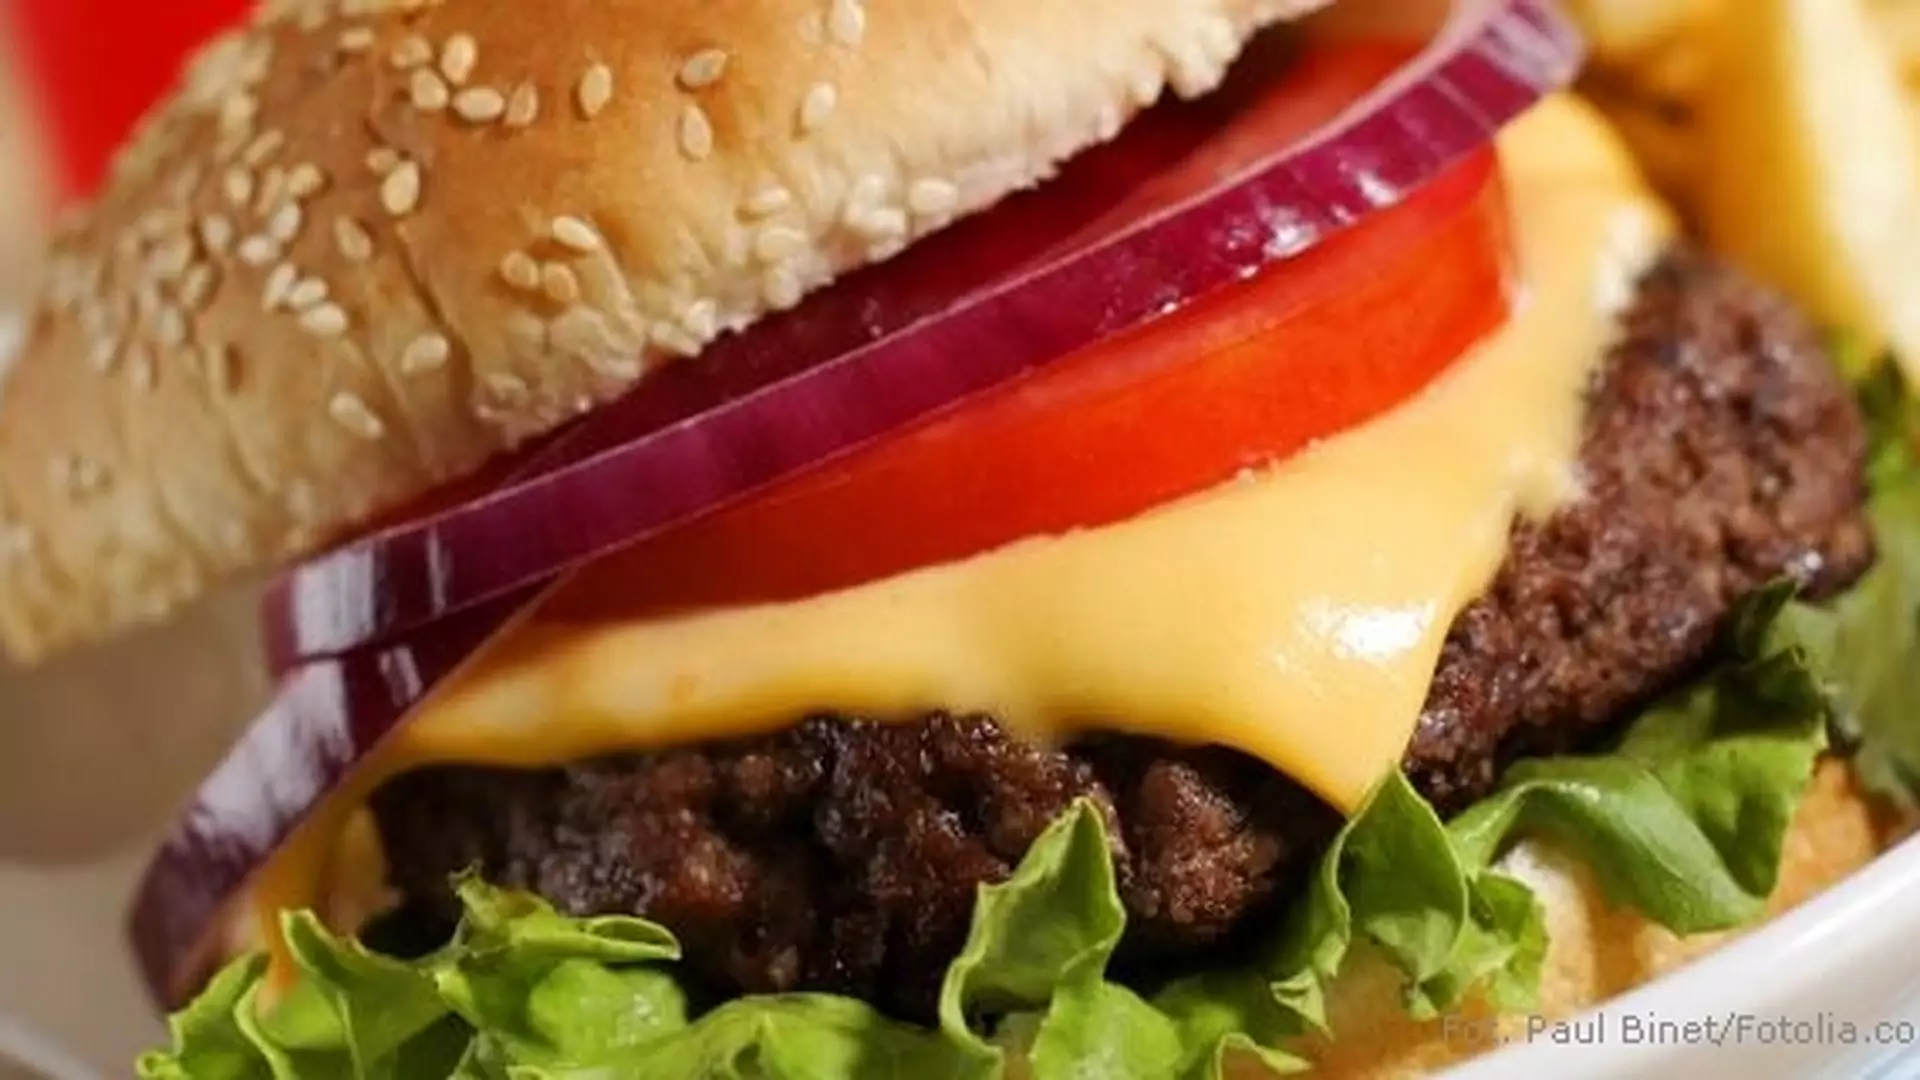 Fast foody są przyczyną epidemii cukrzycy?